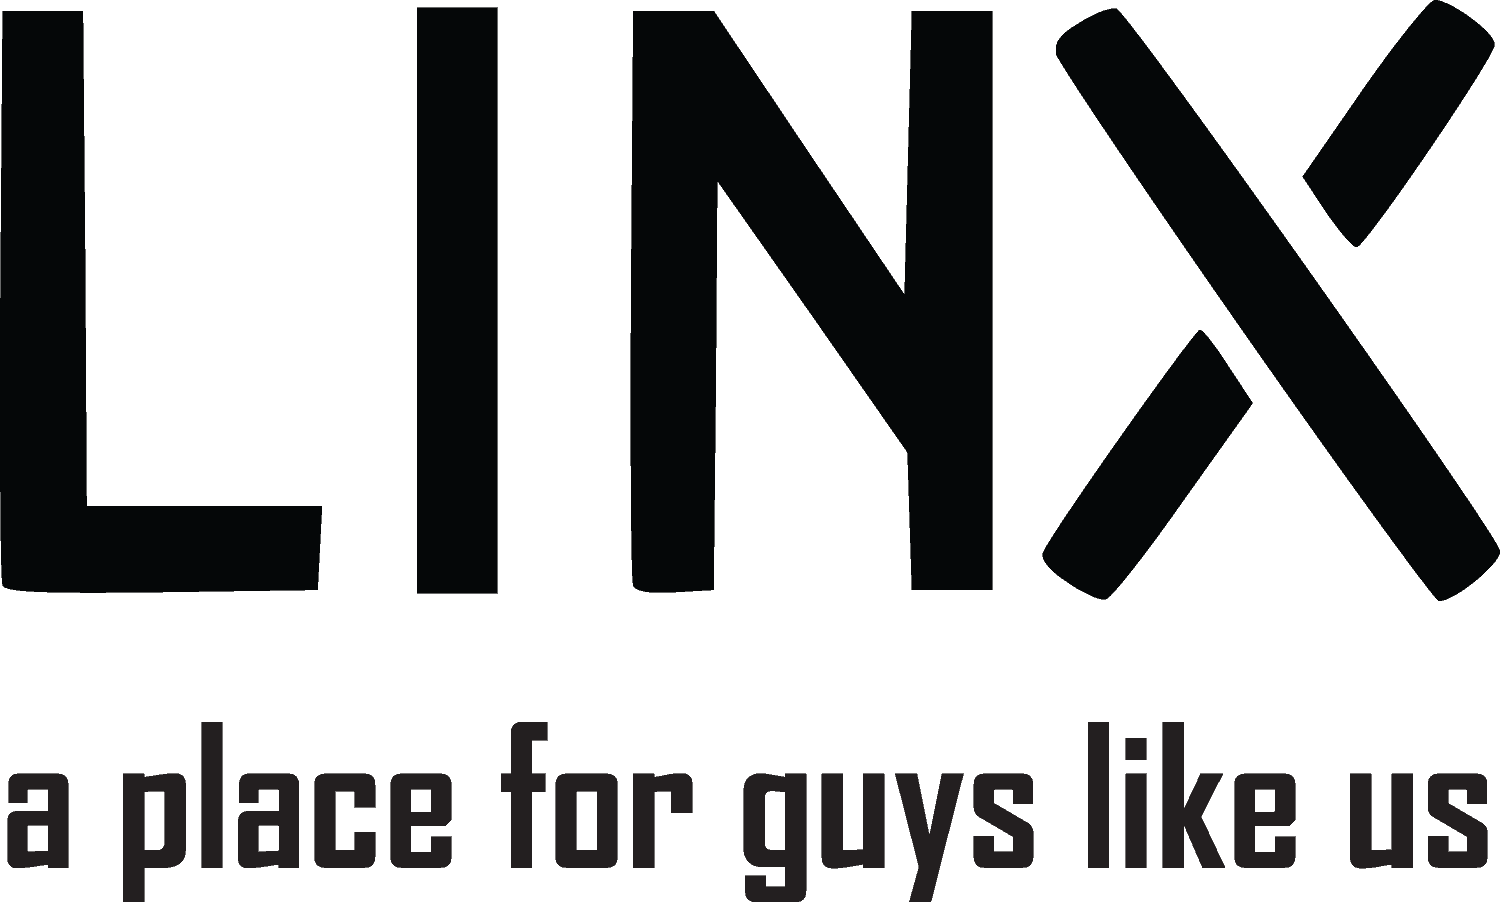 LINX + tagline logo in black